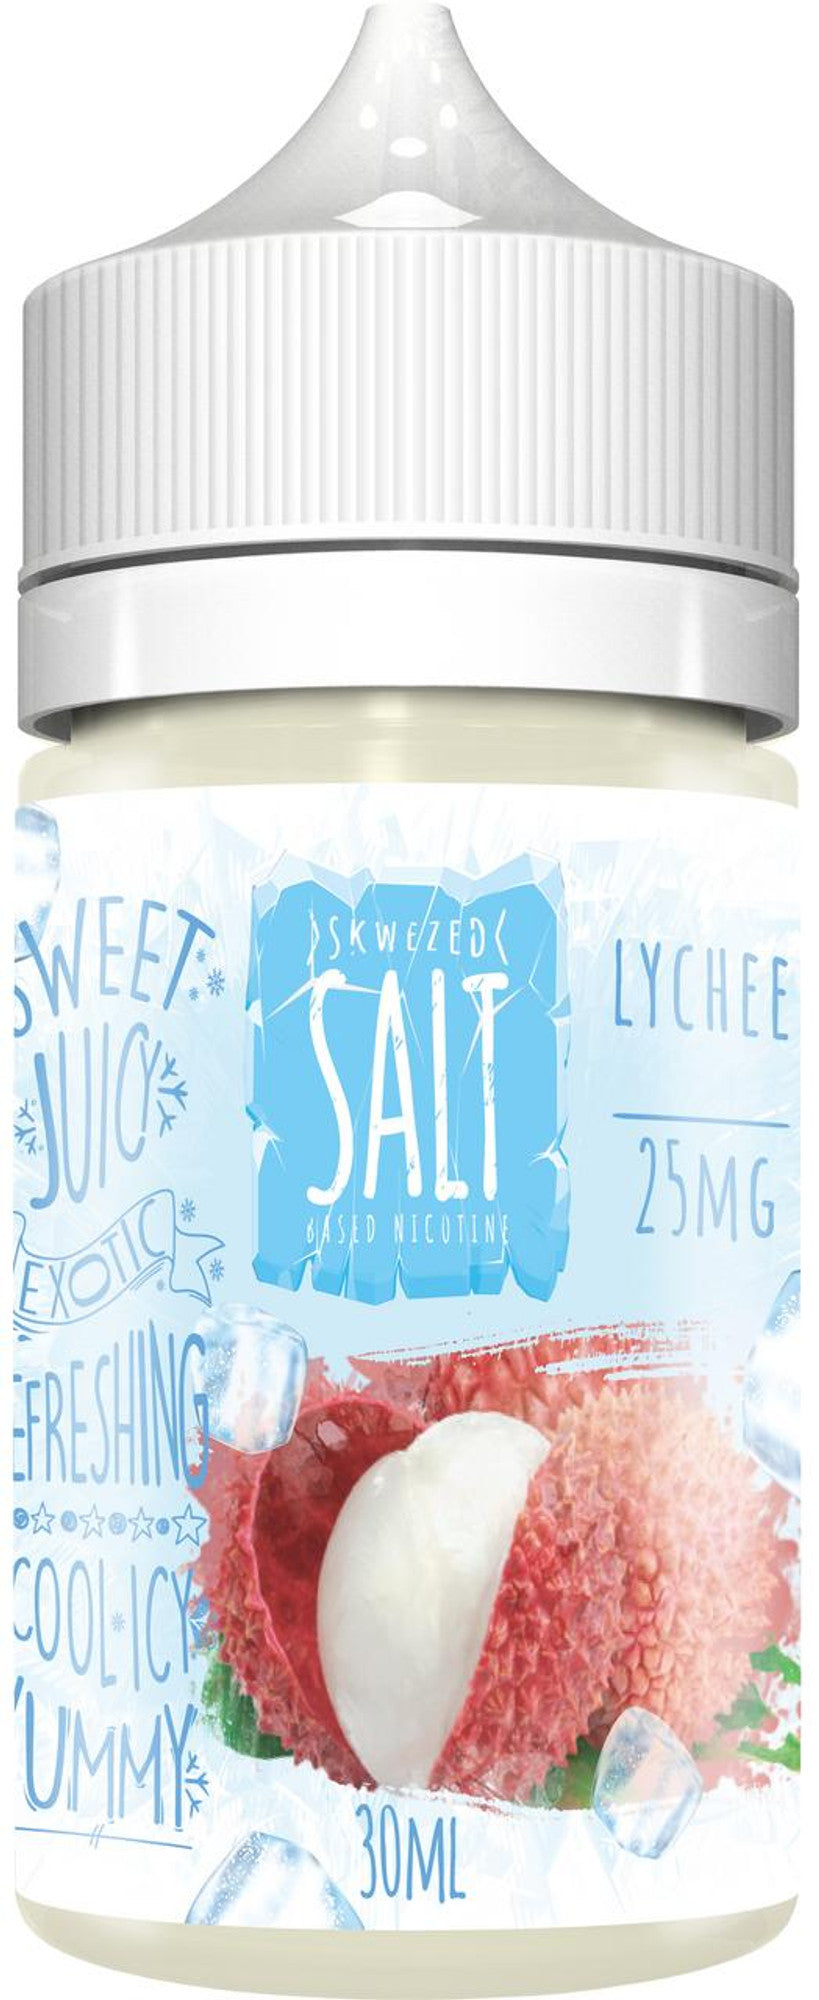 Skwezed E-Liquid Salts Ice Vape Juice - 30ml